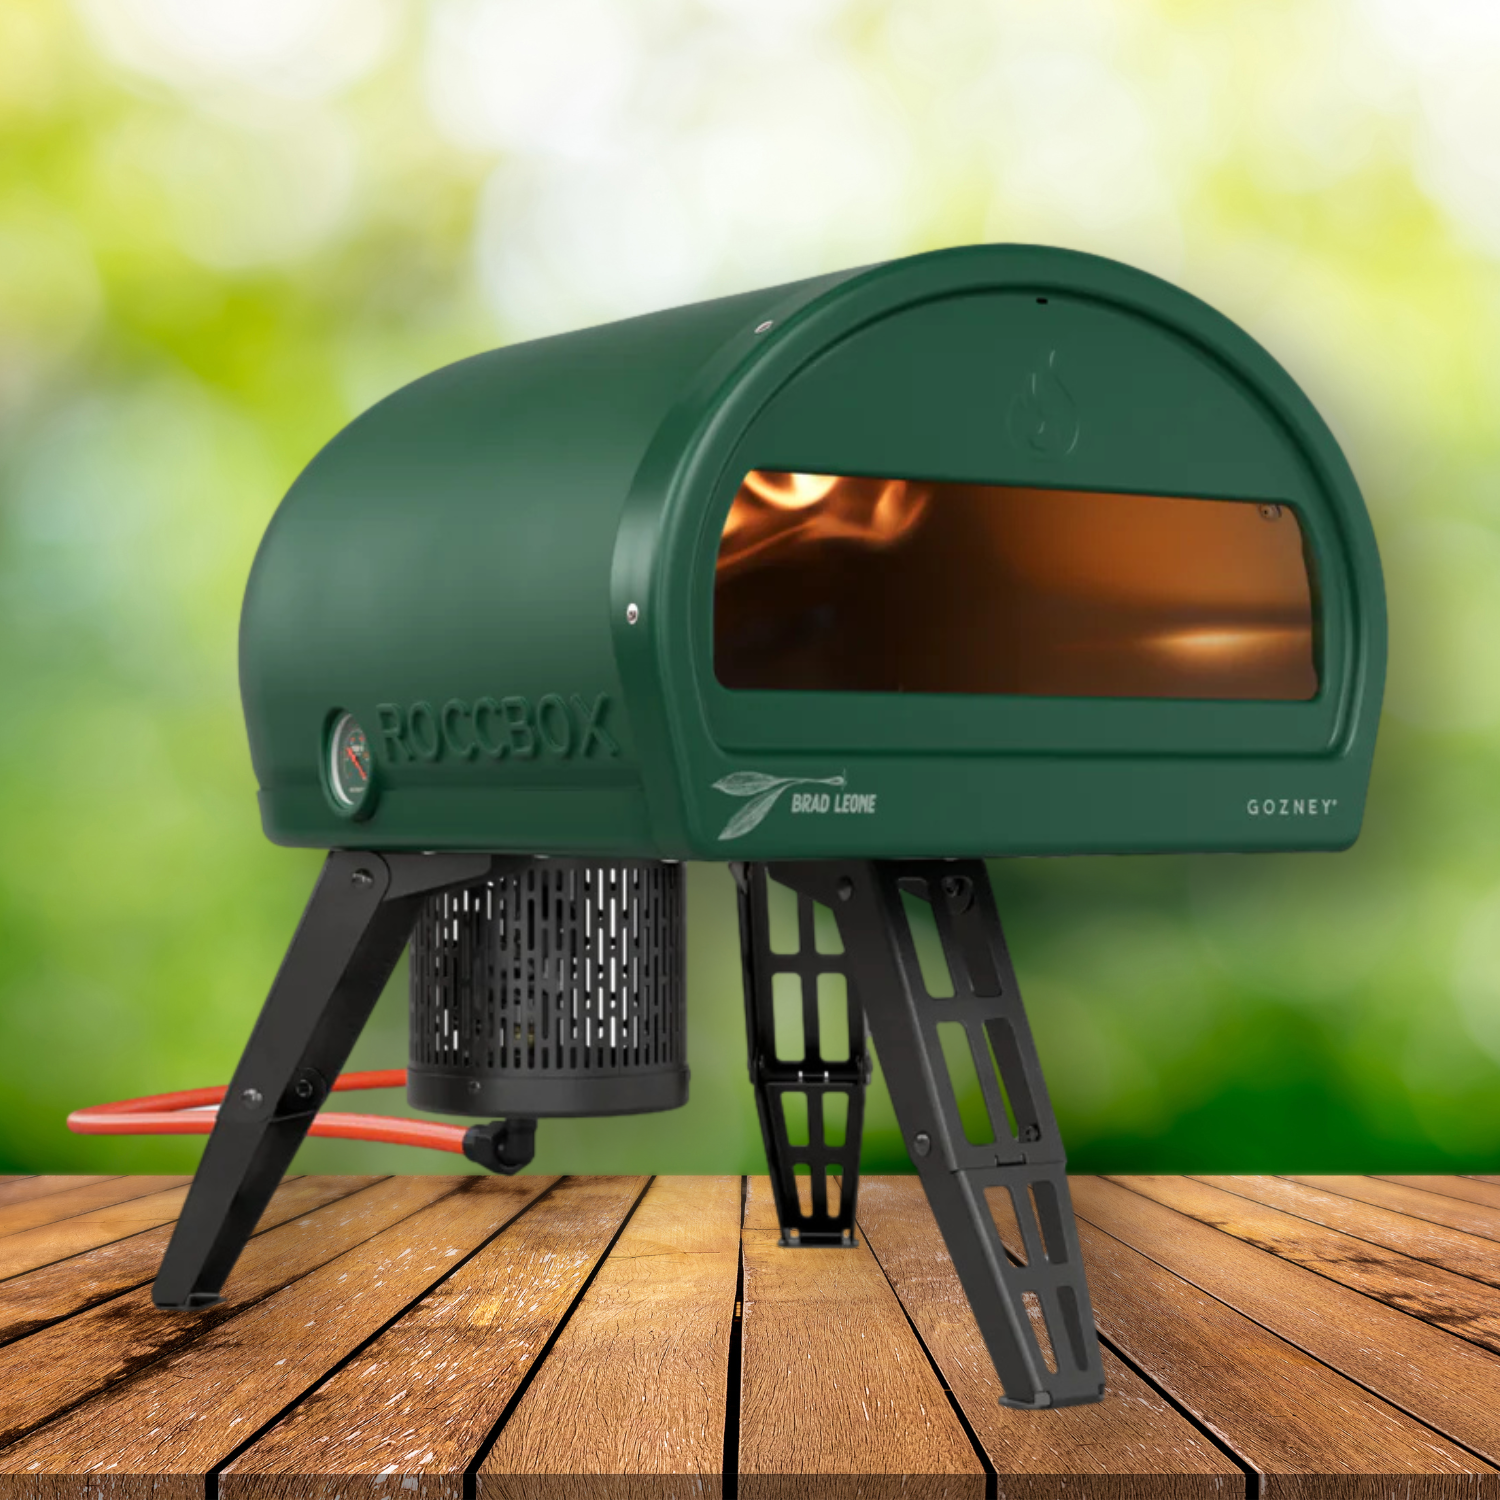 Gozney Roccbox Portable Pizza Oven